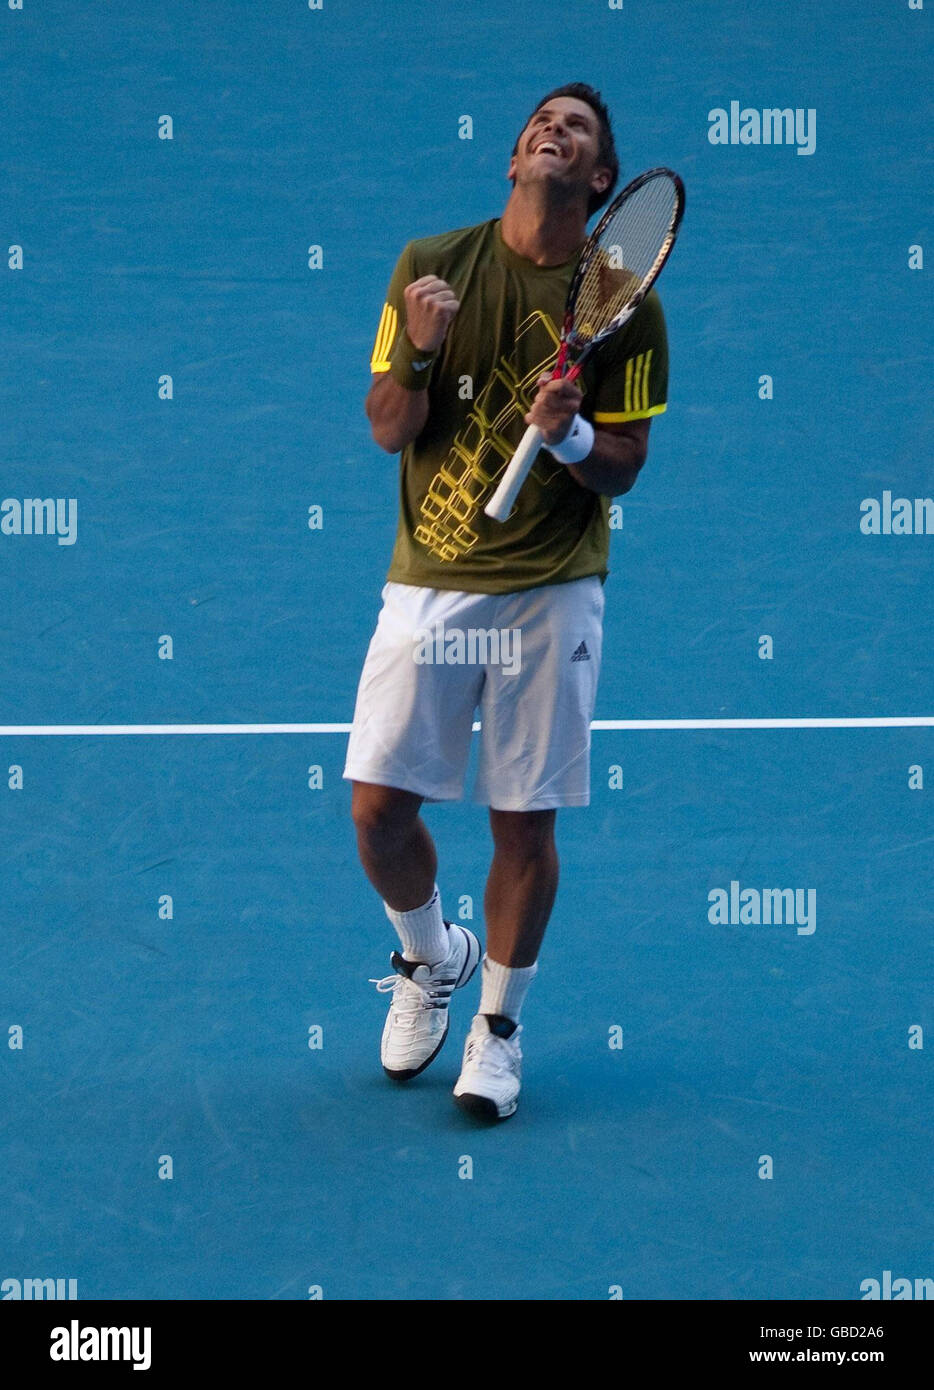 Der spanische Fernando Verdasco feiert den Sieg des britischen Andy Murray bei den Australian Open 2009 im Melbourne Park, Melbourne, Australien. Stockfoto